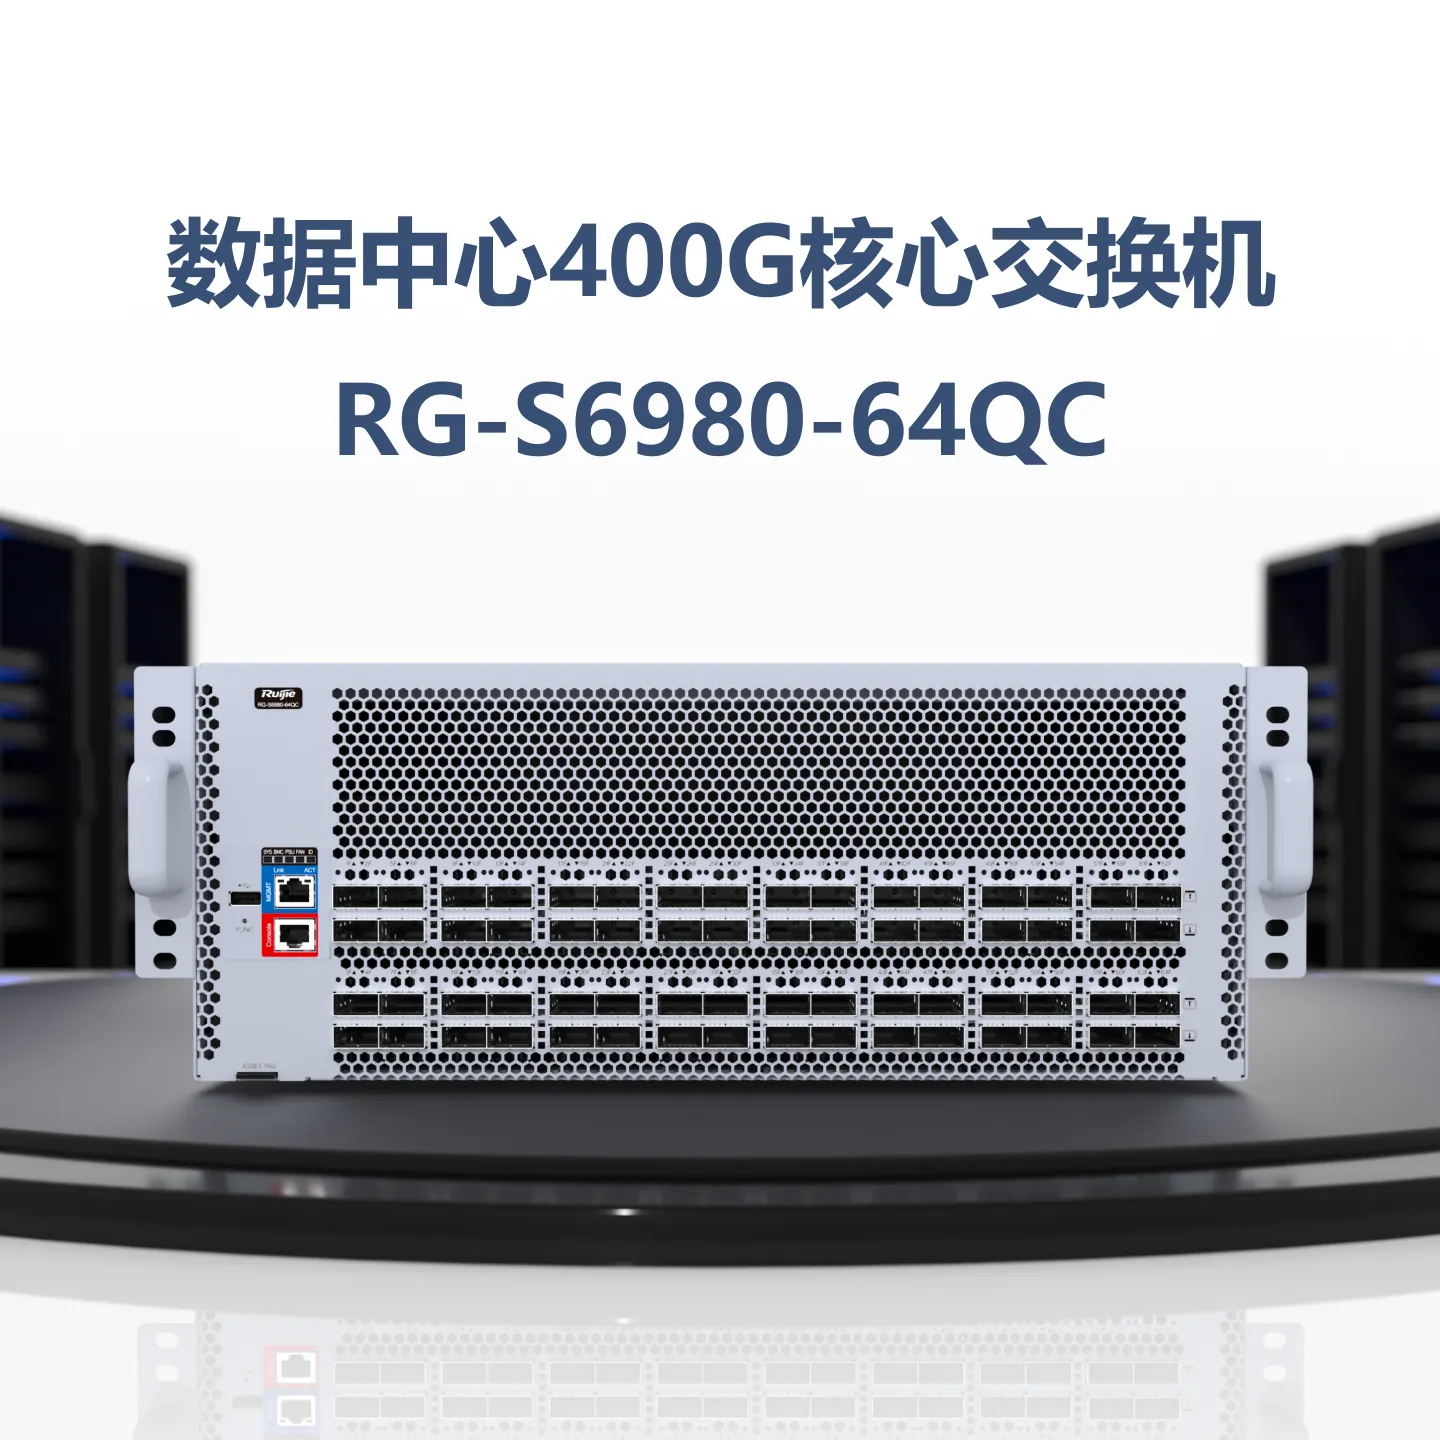 RG-S6980-64QC